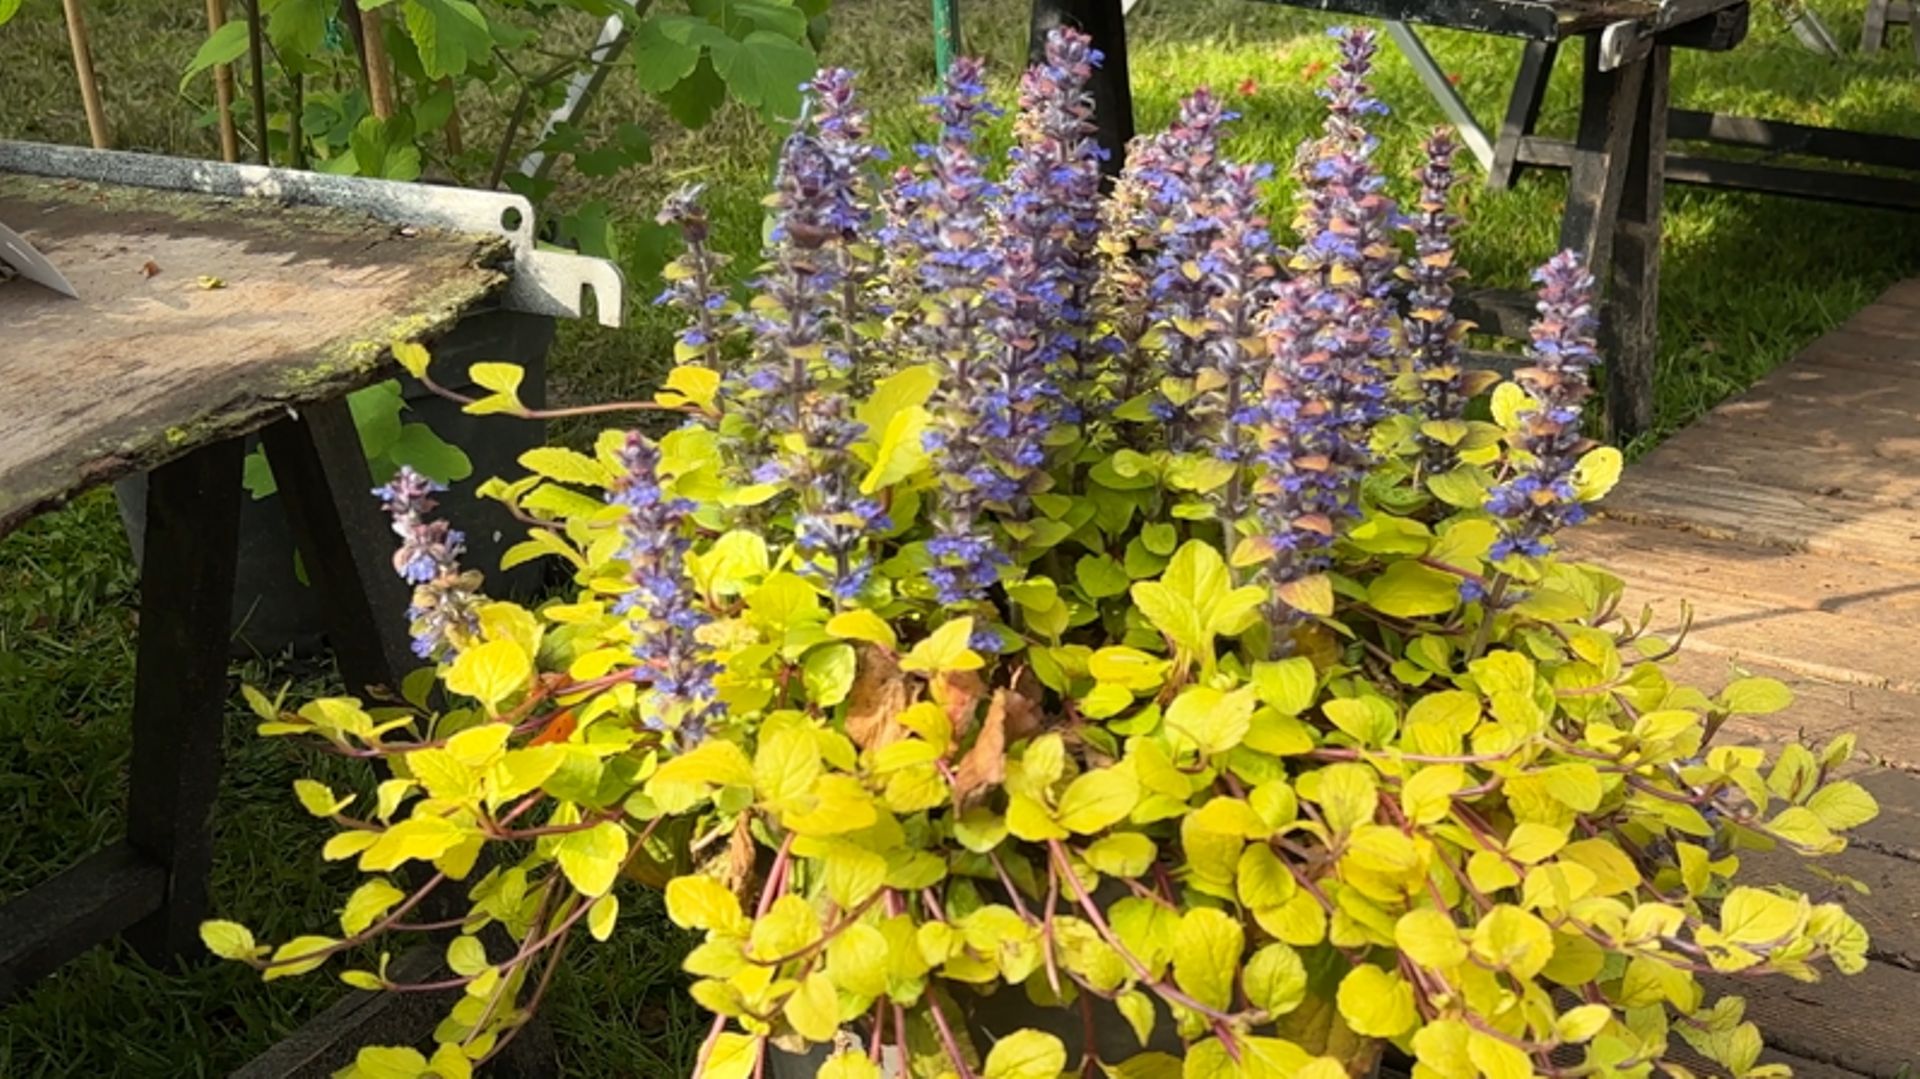 Le mariage du bleu et du jaune est toujours une valeur sûre au jardin. Présentée ici par une seule plante, elle peut aussi être obtenue par des combinaisons. Un exemple : la floraison des alchémilles et celle des nepetas.